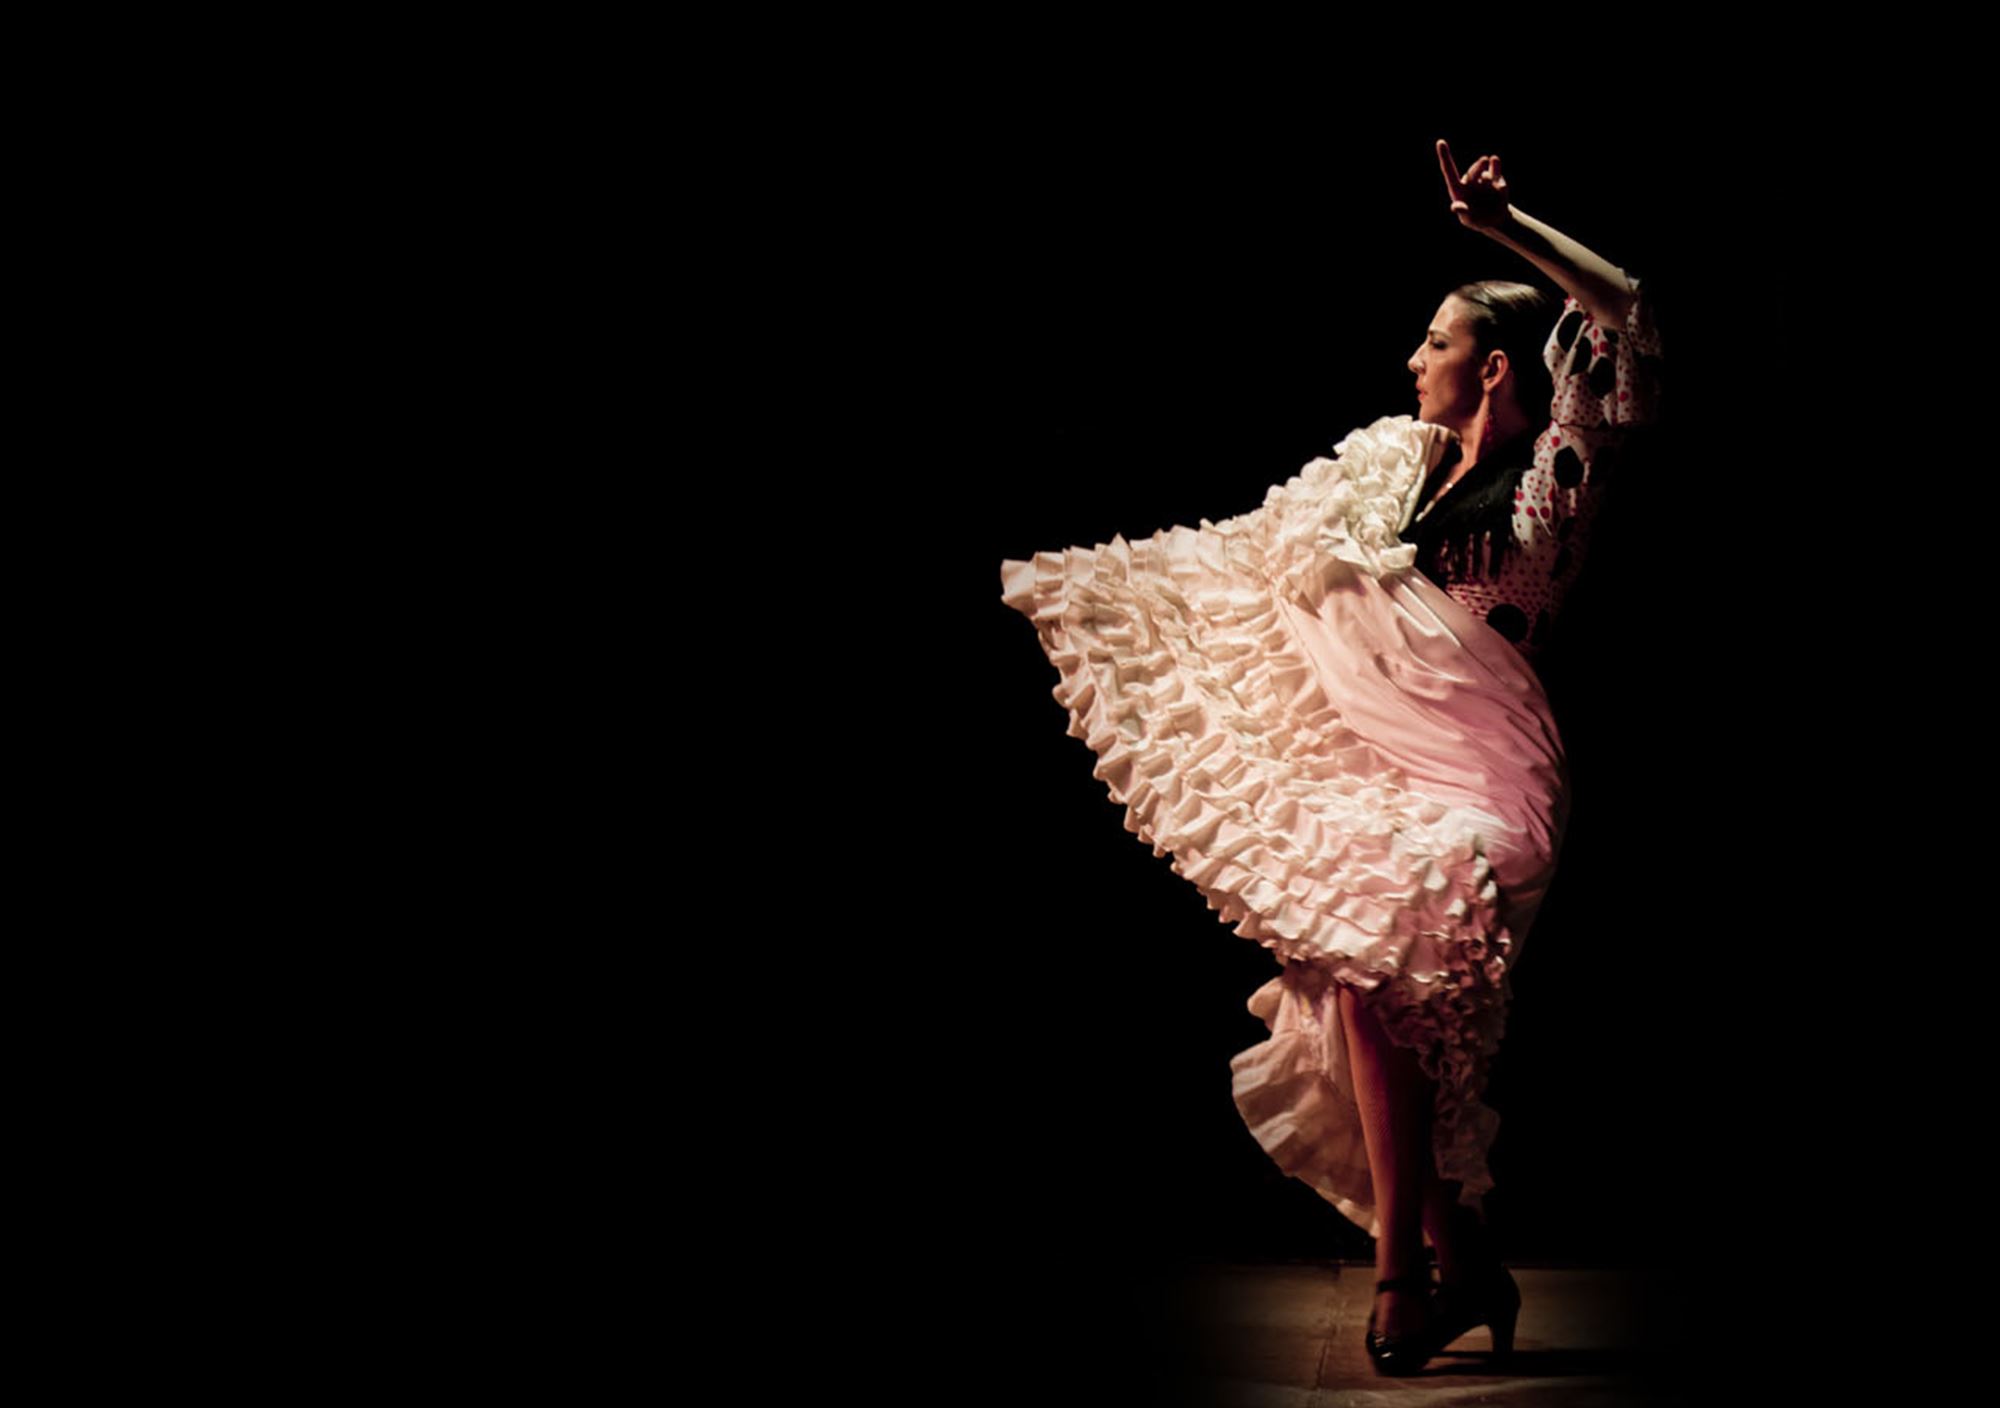 acheter réserver tours Spectacle du flamenco au Tablao Torres Bermejas billets visiter madrid